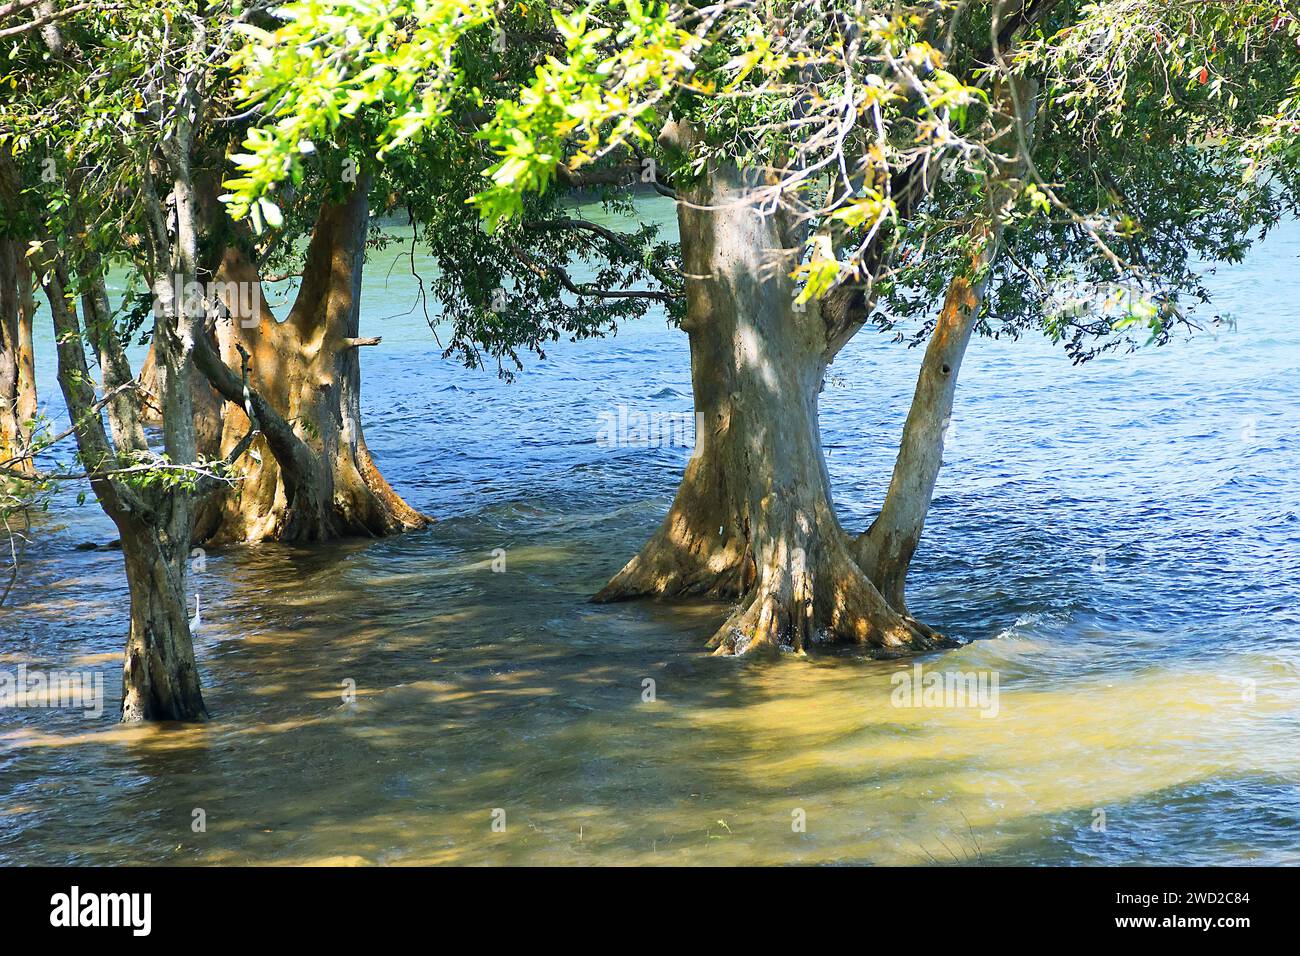 Vestiges de forêts de mangroves au Sri Lanka. Vieux arbres à l'embouchure de la rivière, marée haute. L'aigrette se nourrit sous la canopée Banque D'Images